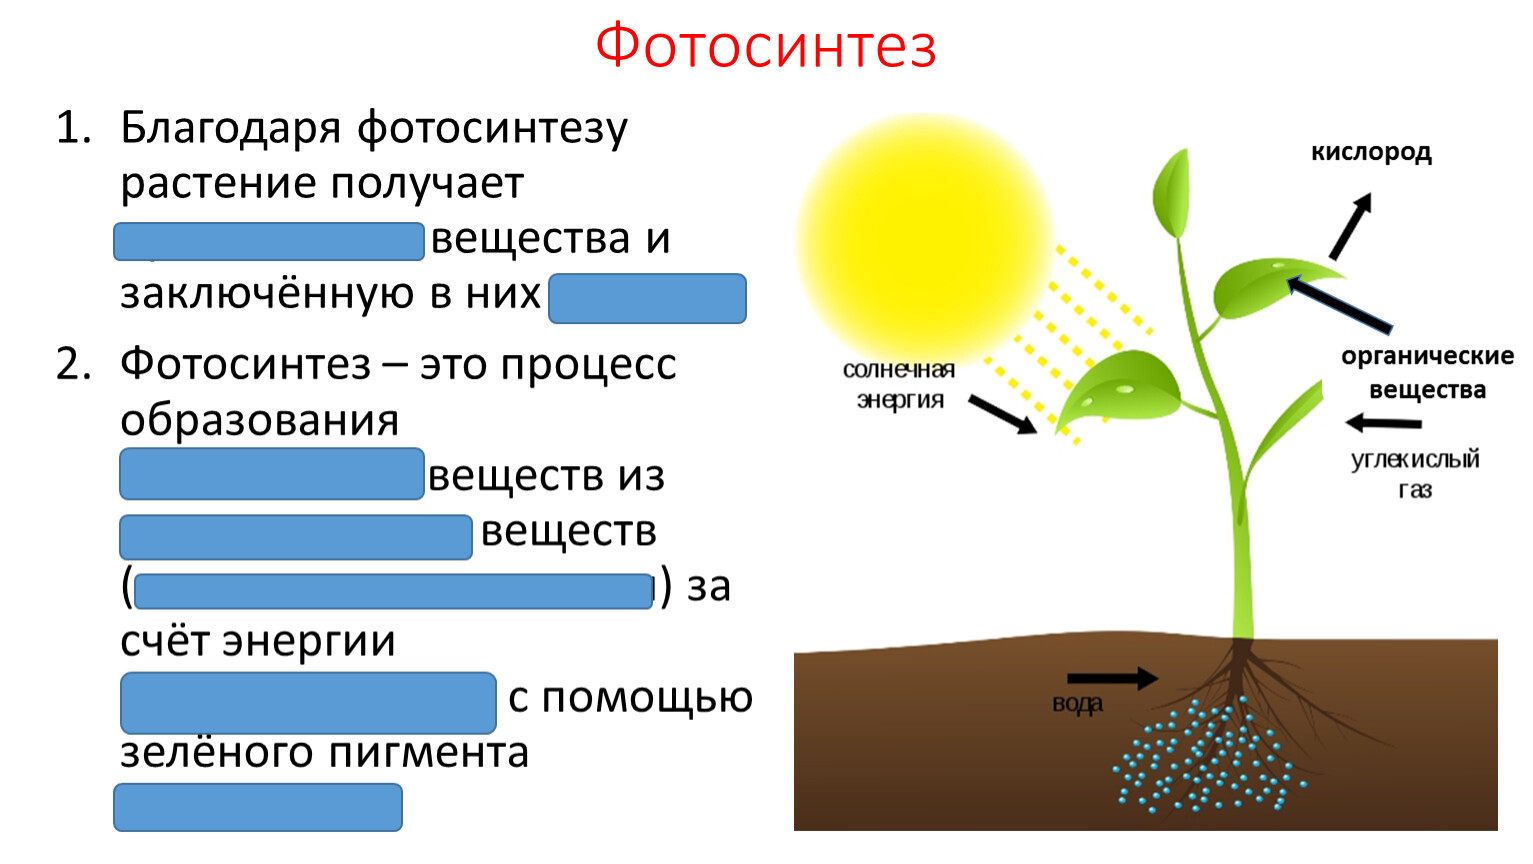 Тест по теме фотосинтез дыхание 6 класс. Фотосинтез класс 6 класс. Фотосинтез 5-6 класс. Фотосинтез органические вещества. Солнечная энергия фотосинтез.